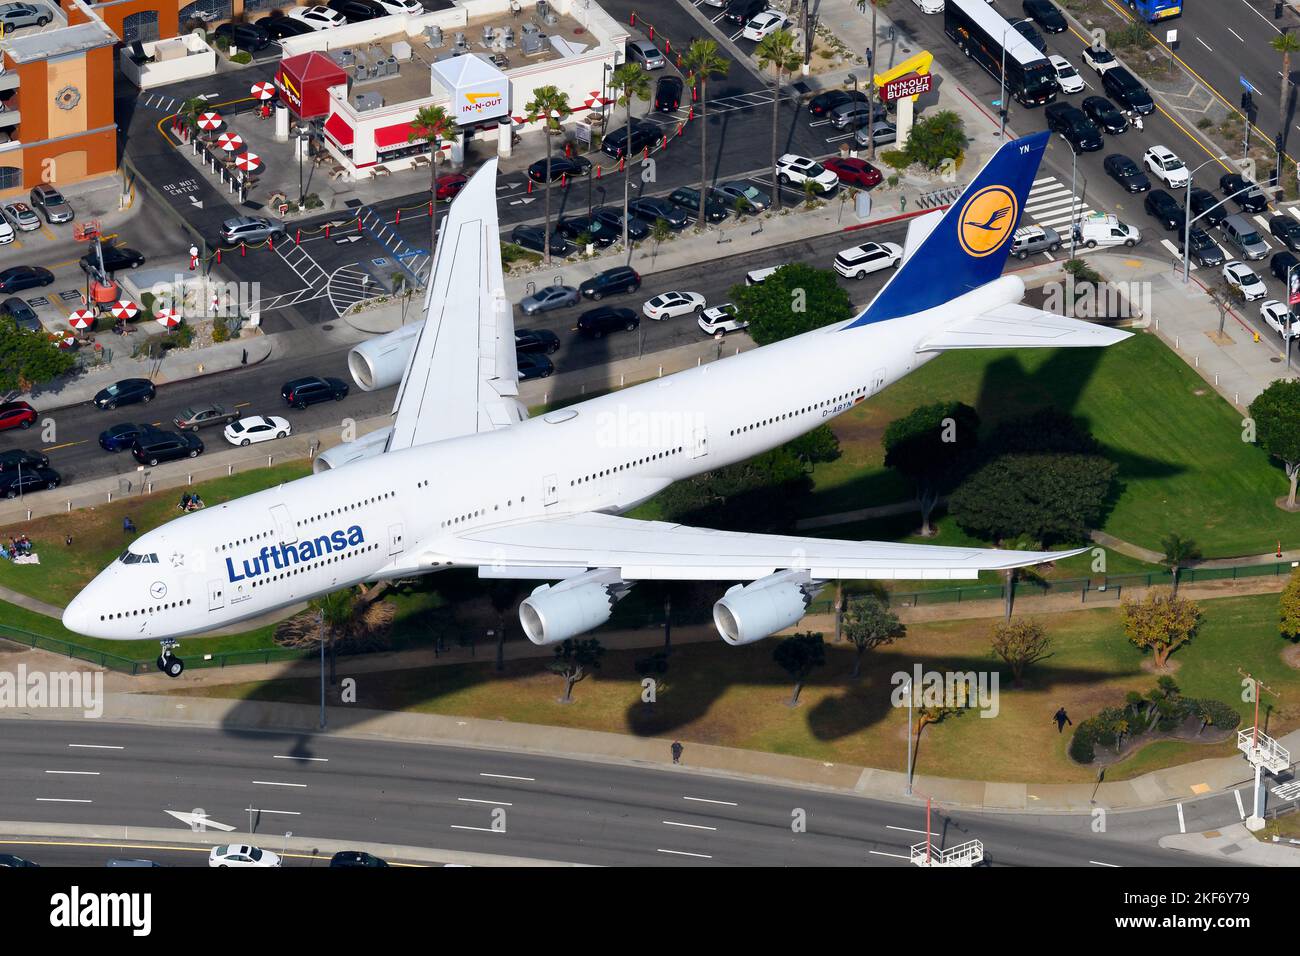 L'avion Lufthansa Boeing 747 est sur le point d'atterrir. Avion 747-8i de la compagnie aérienne Deutsche Lufthansa immatriculée sous le nom de D-ABYN vu d'en haut. Banque D'Images